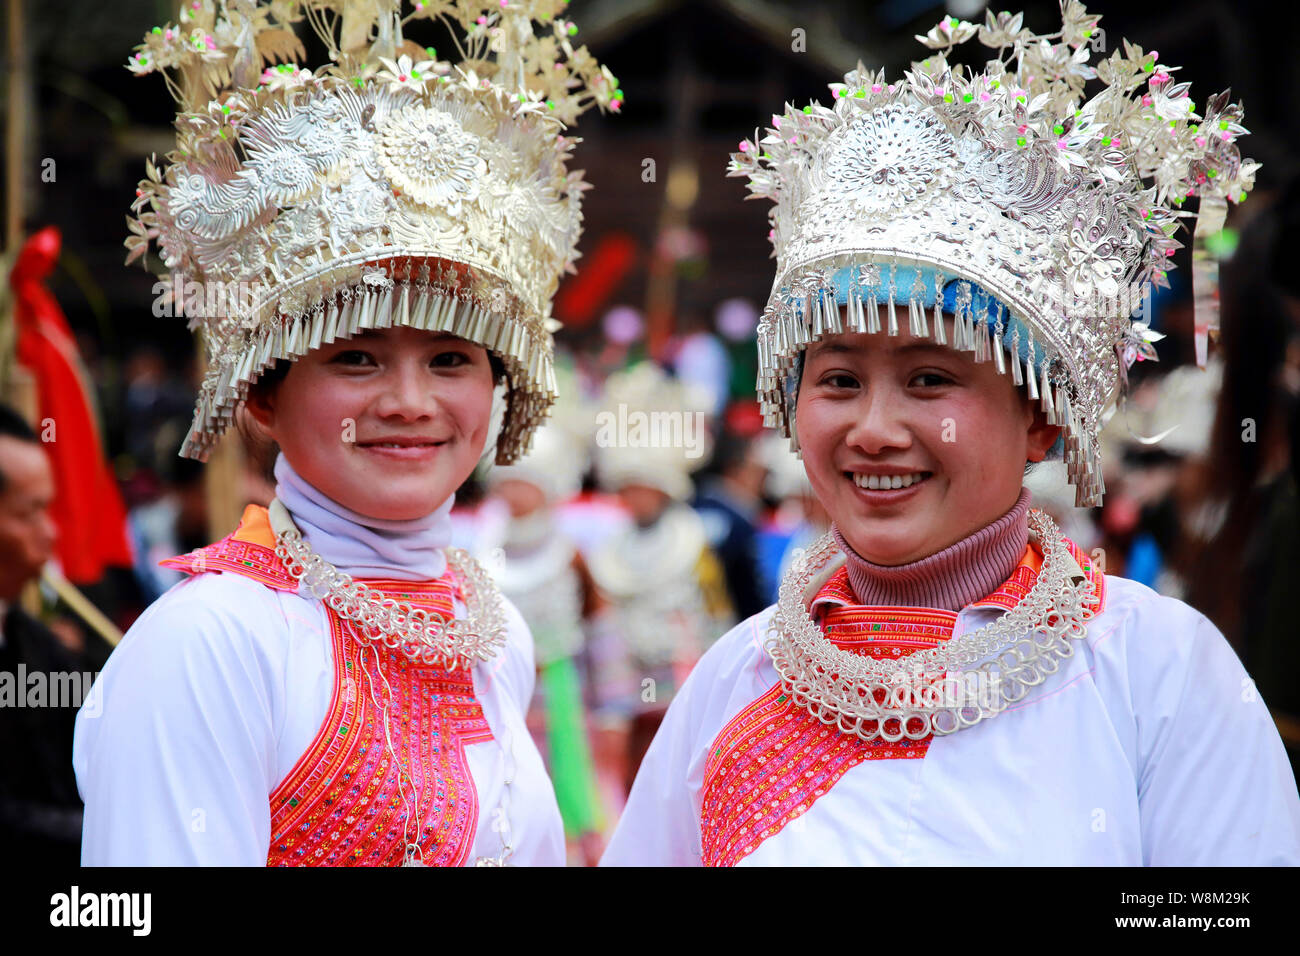 Traditionell gekleidete Frauen der Miao, die ethnischen Minderheiten angehören, posieren für Fotos wie Sie tanzen zu feiern das chinesische Mondjahr, auch als Feder Festi bekannt Stockfoto